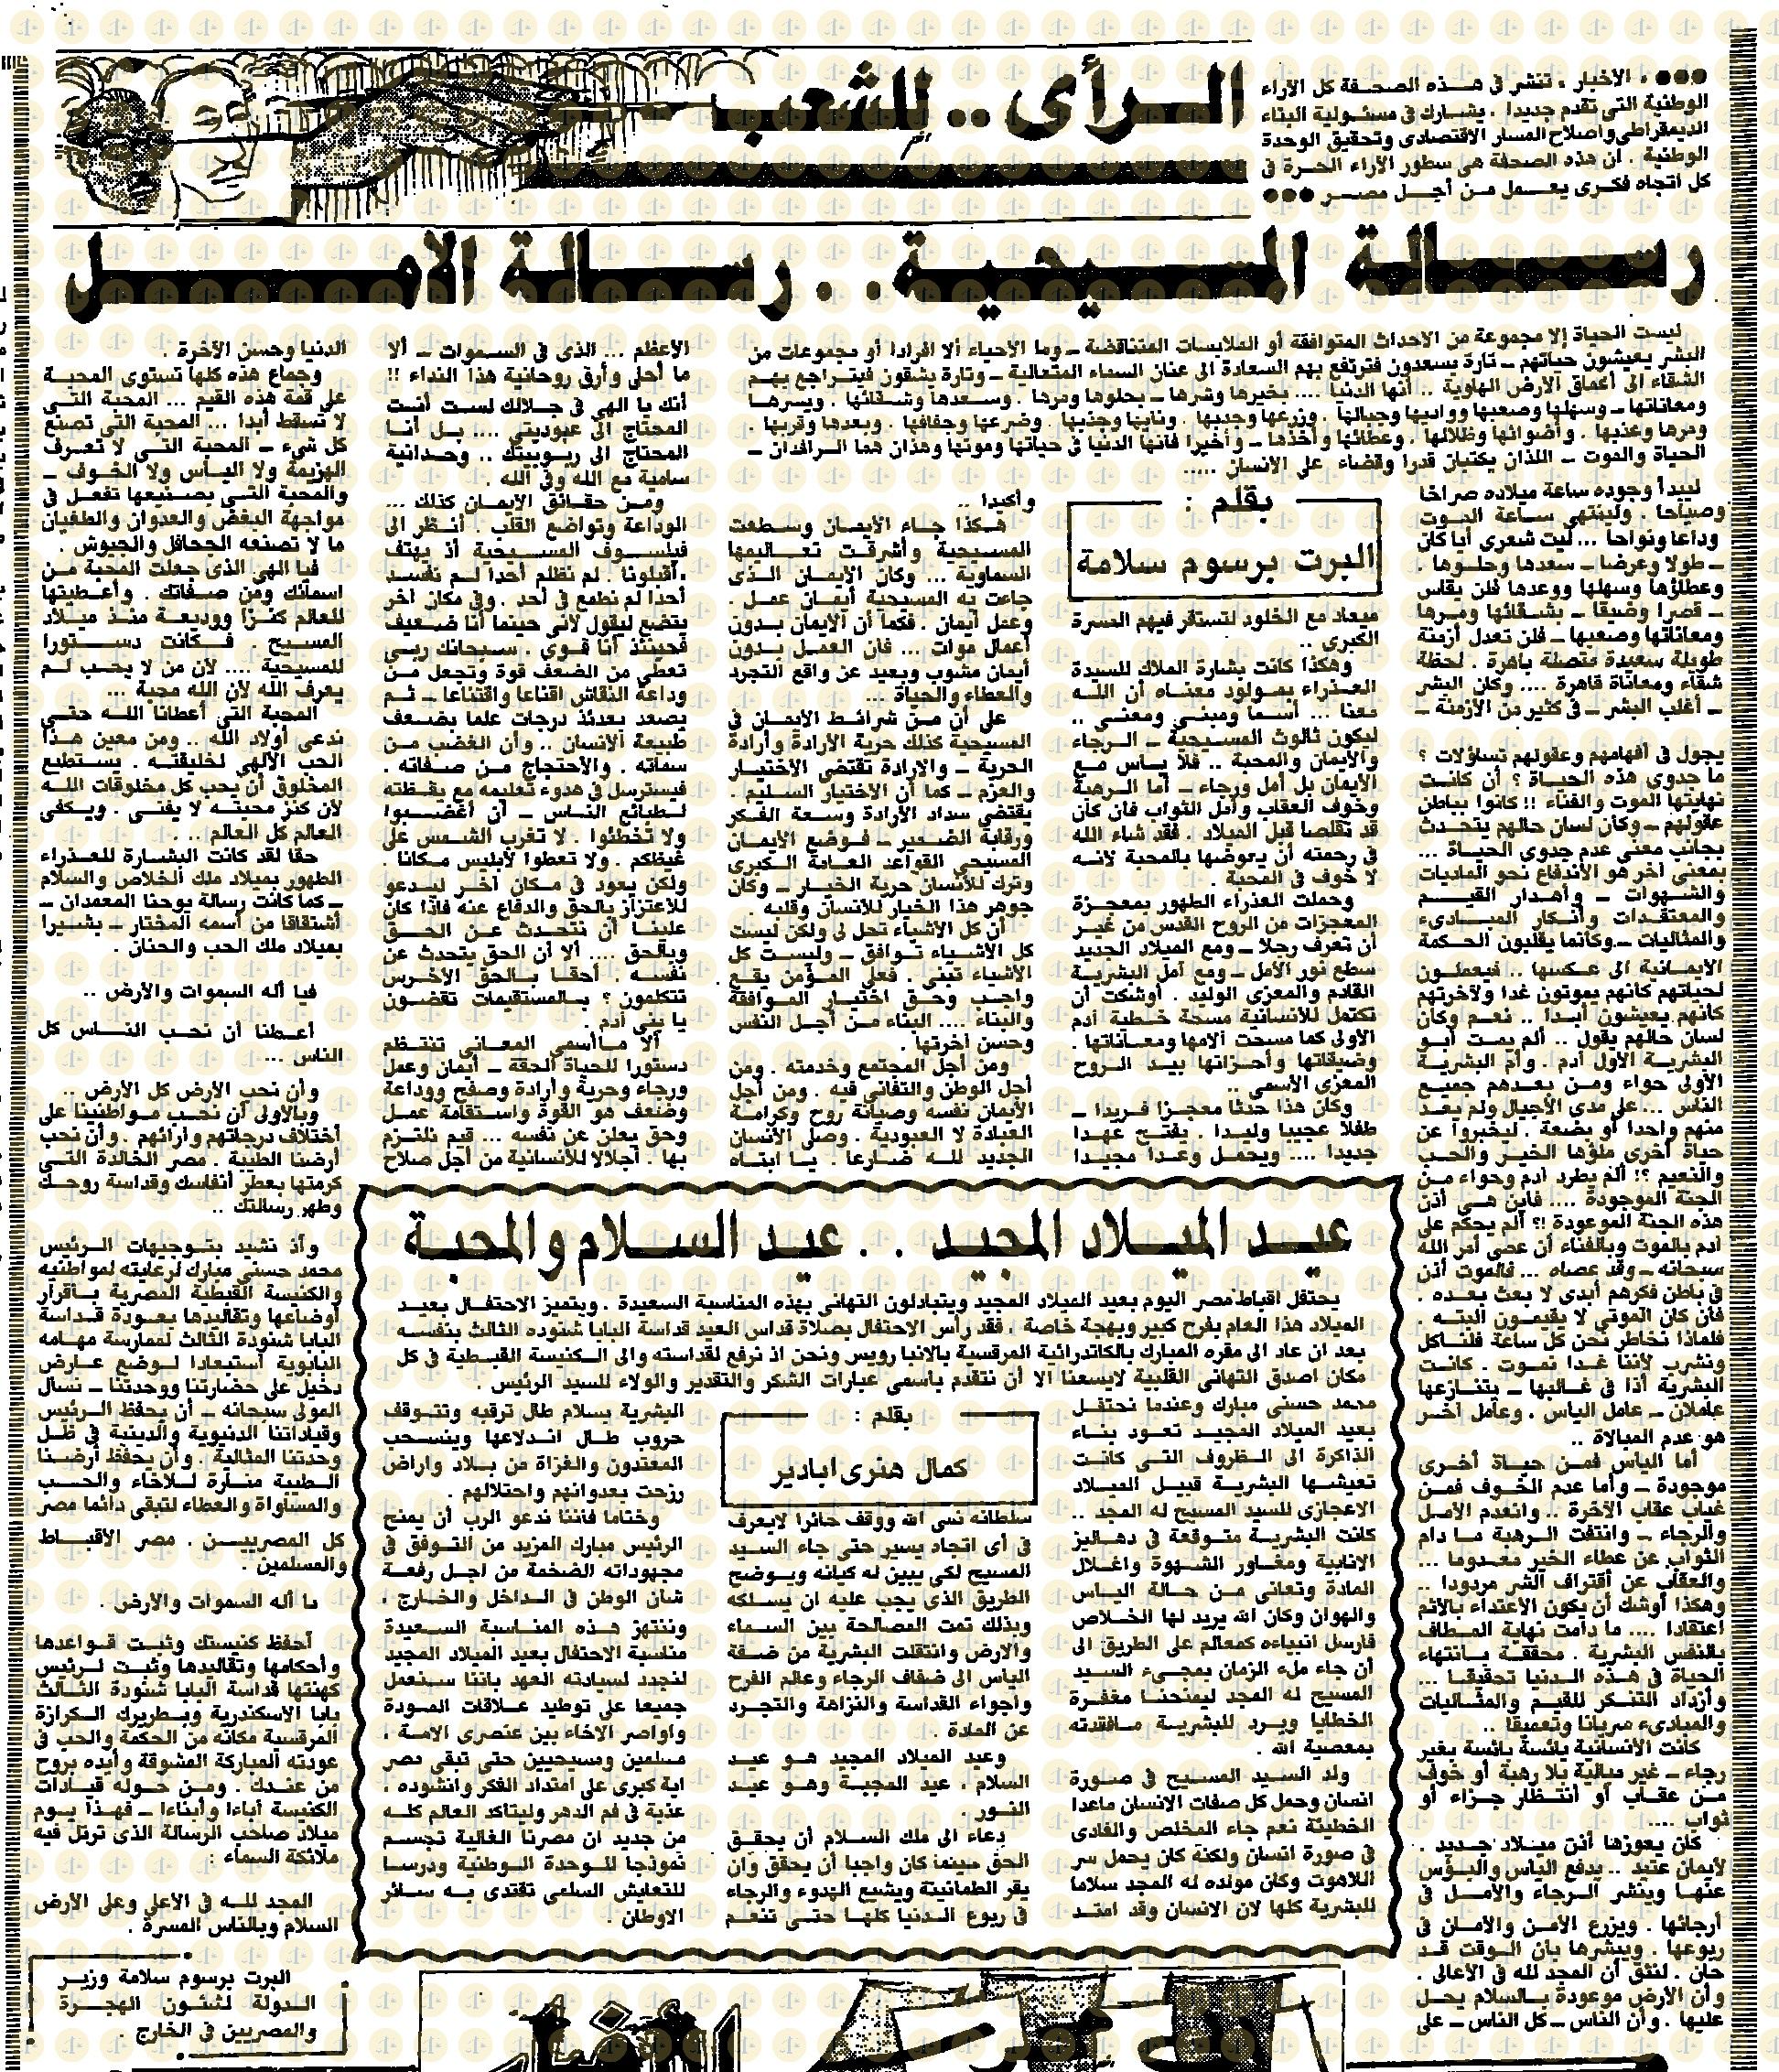 يوم 7 يناير 1985م، الأخبار، مقال ألبرت برسوم سلامة وكمال هنري بادير، ص5